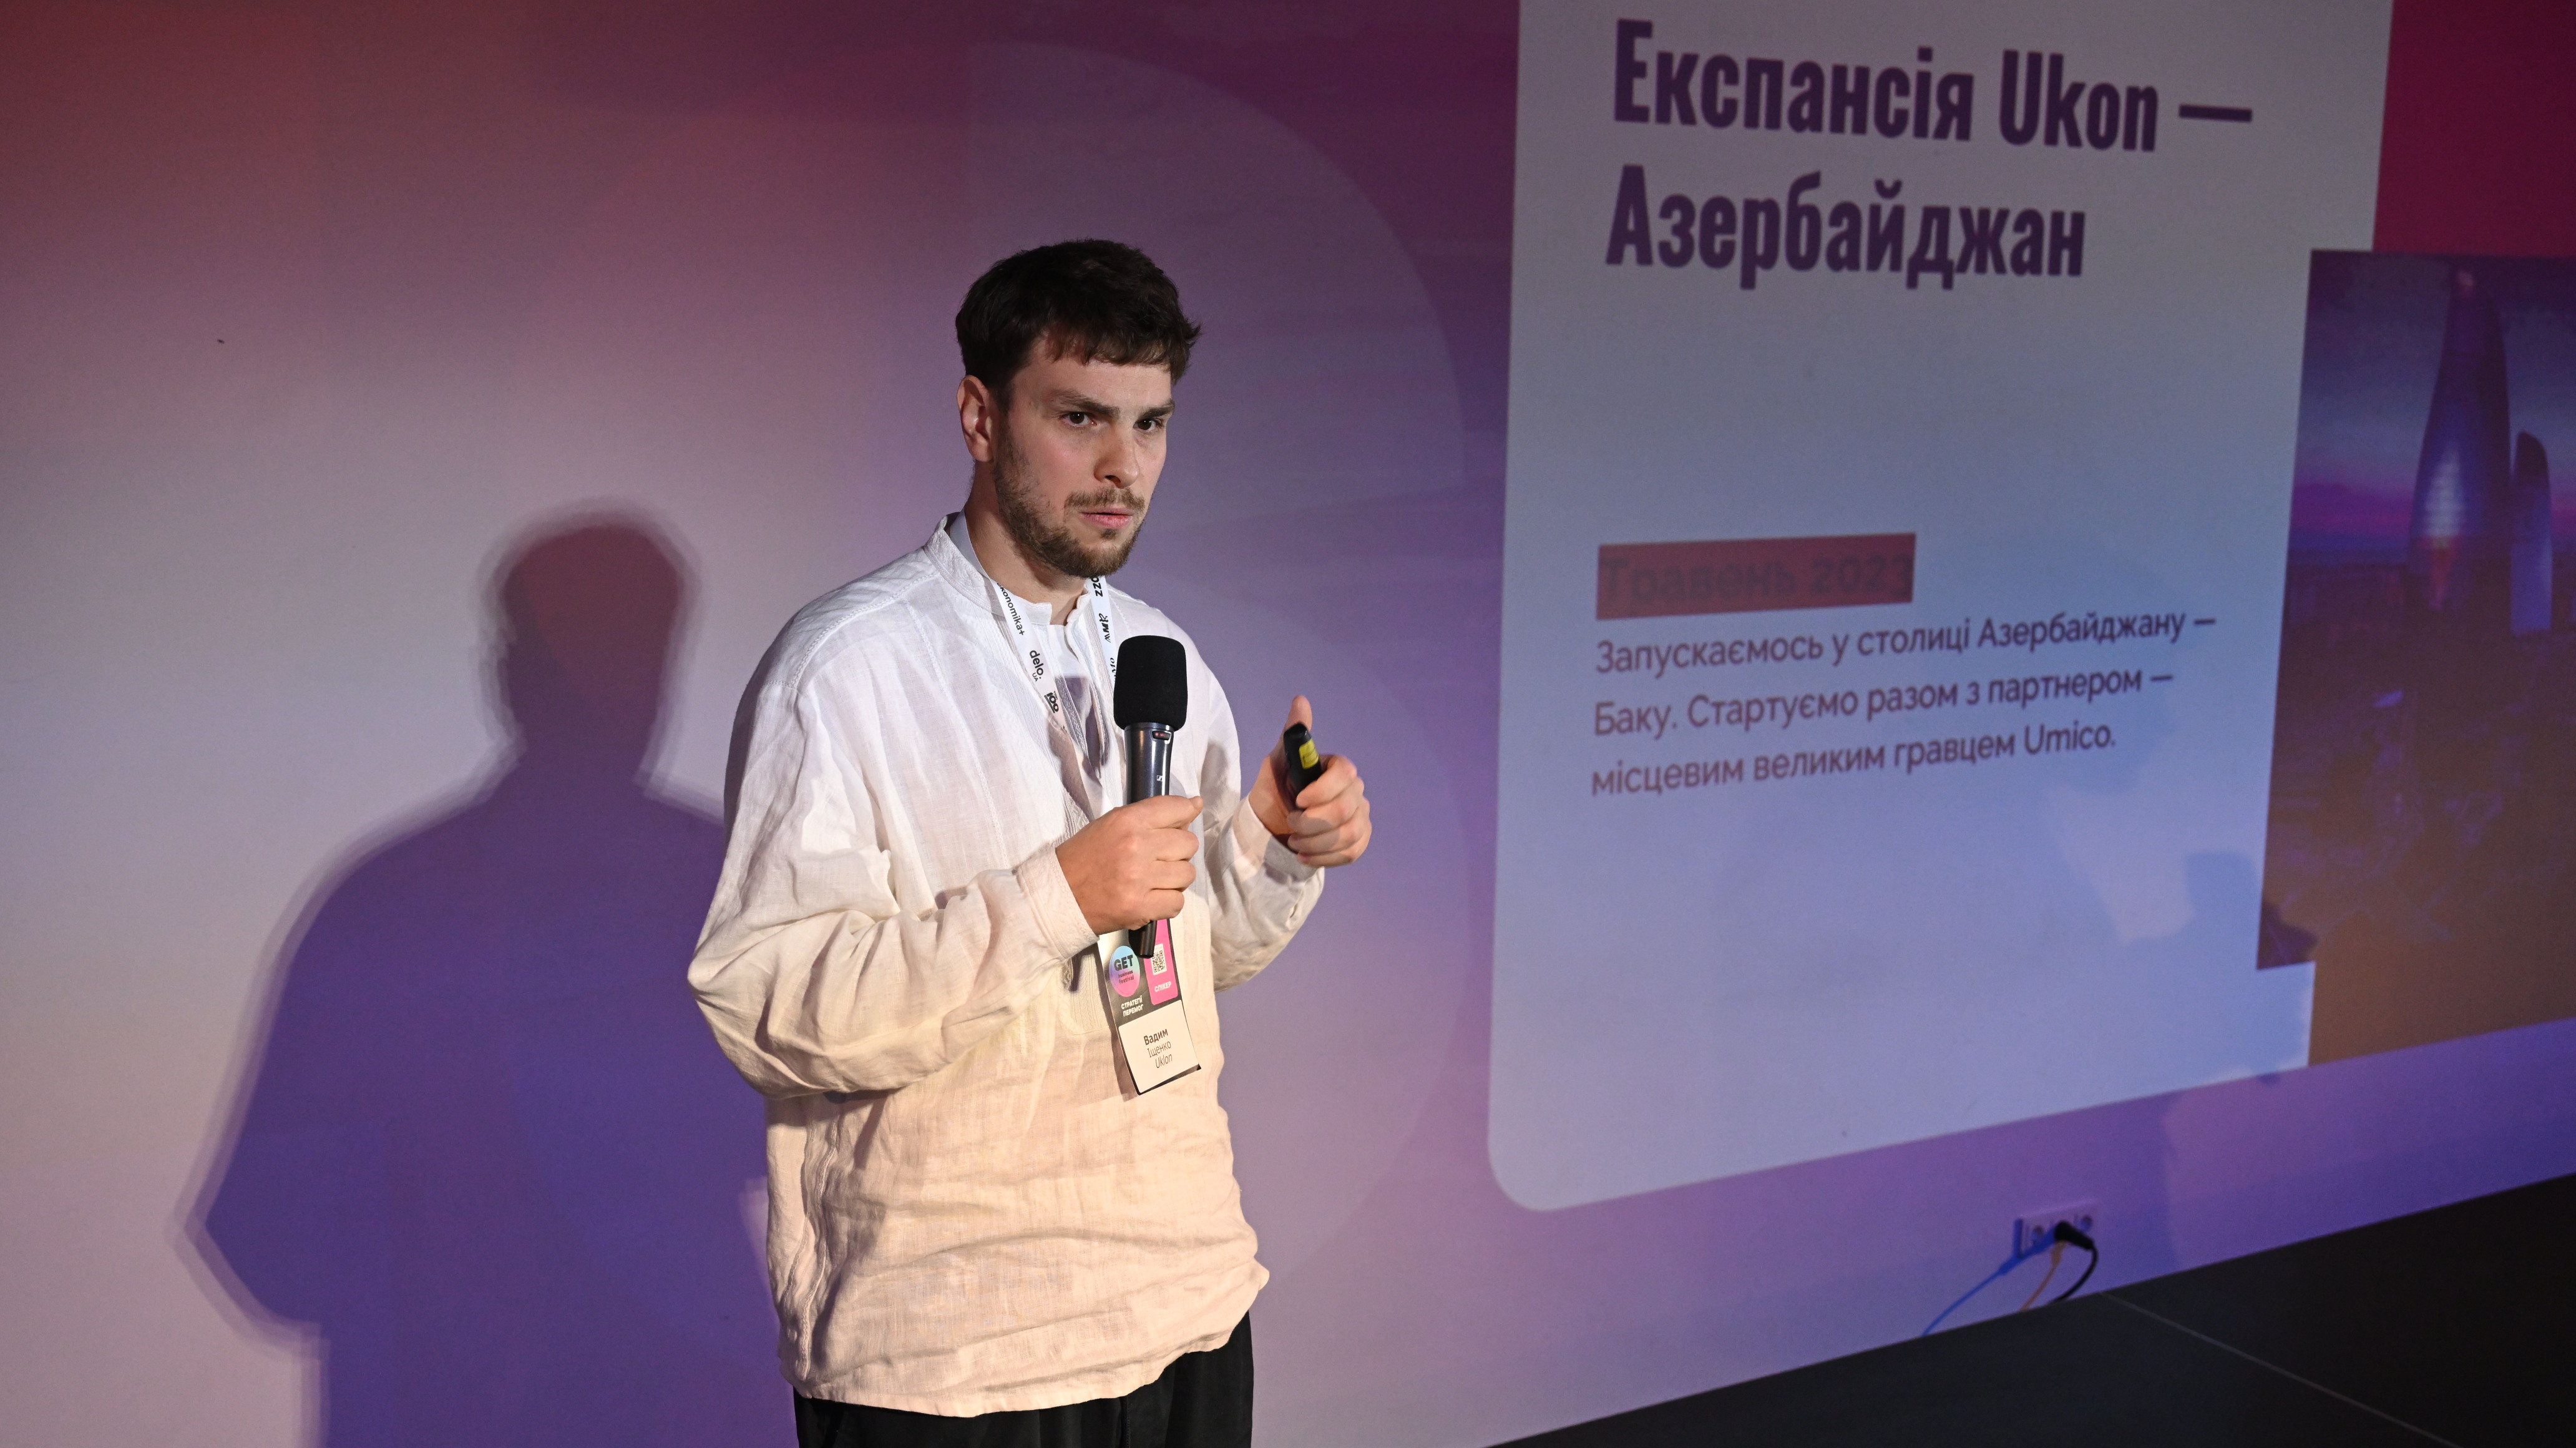 Более 1000 участников получили стратегии бизнес-роста на GET Business Festival в Киеве — фото